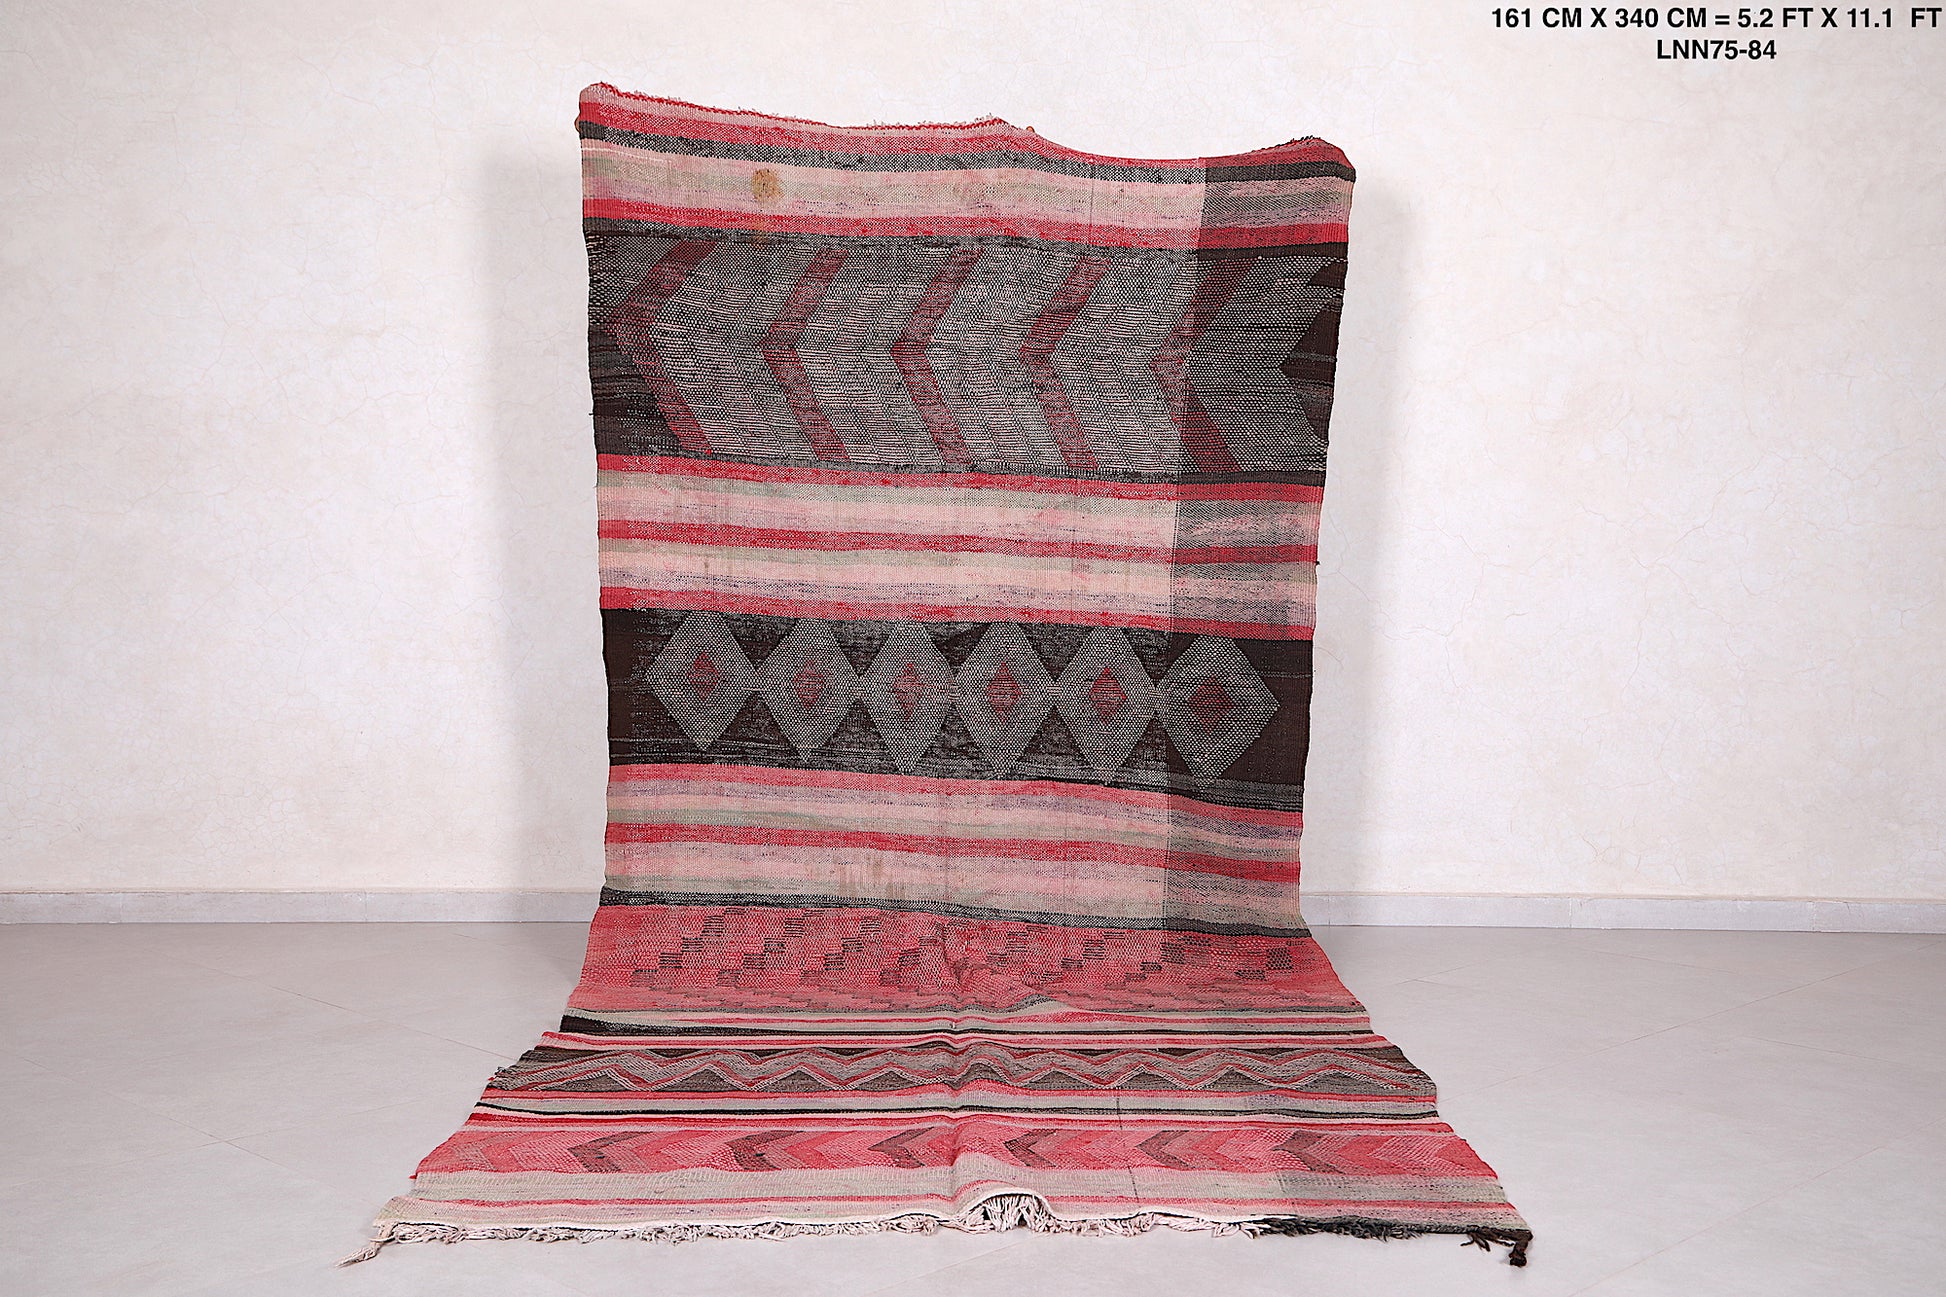 Vintage berber handwoven kilim runner rug 5.2 FT X 11.1  FT